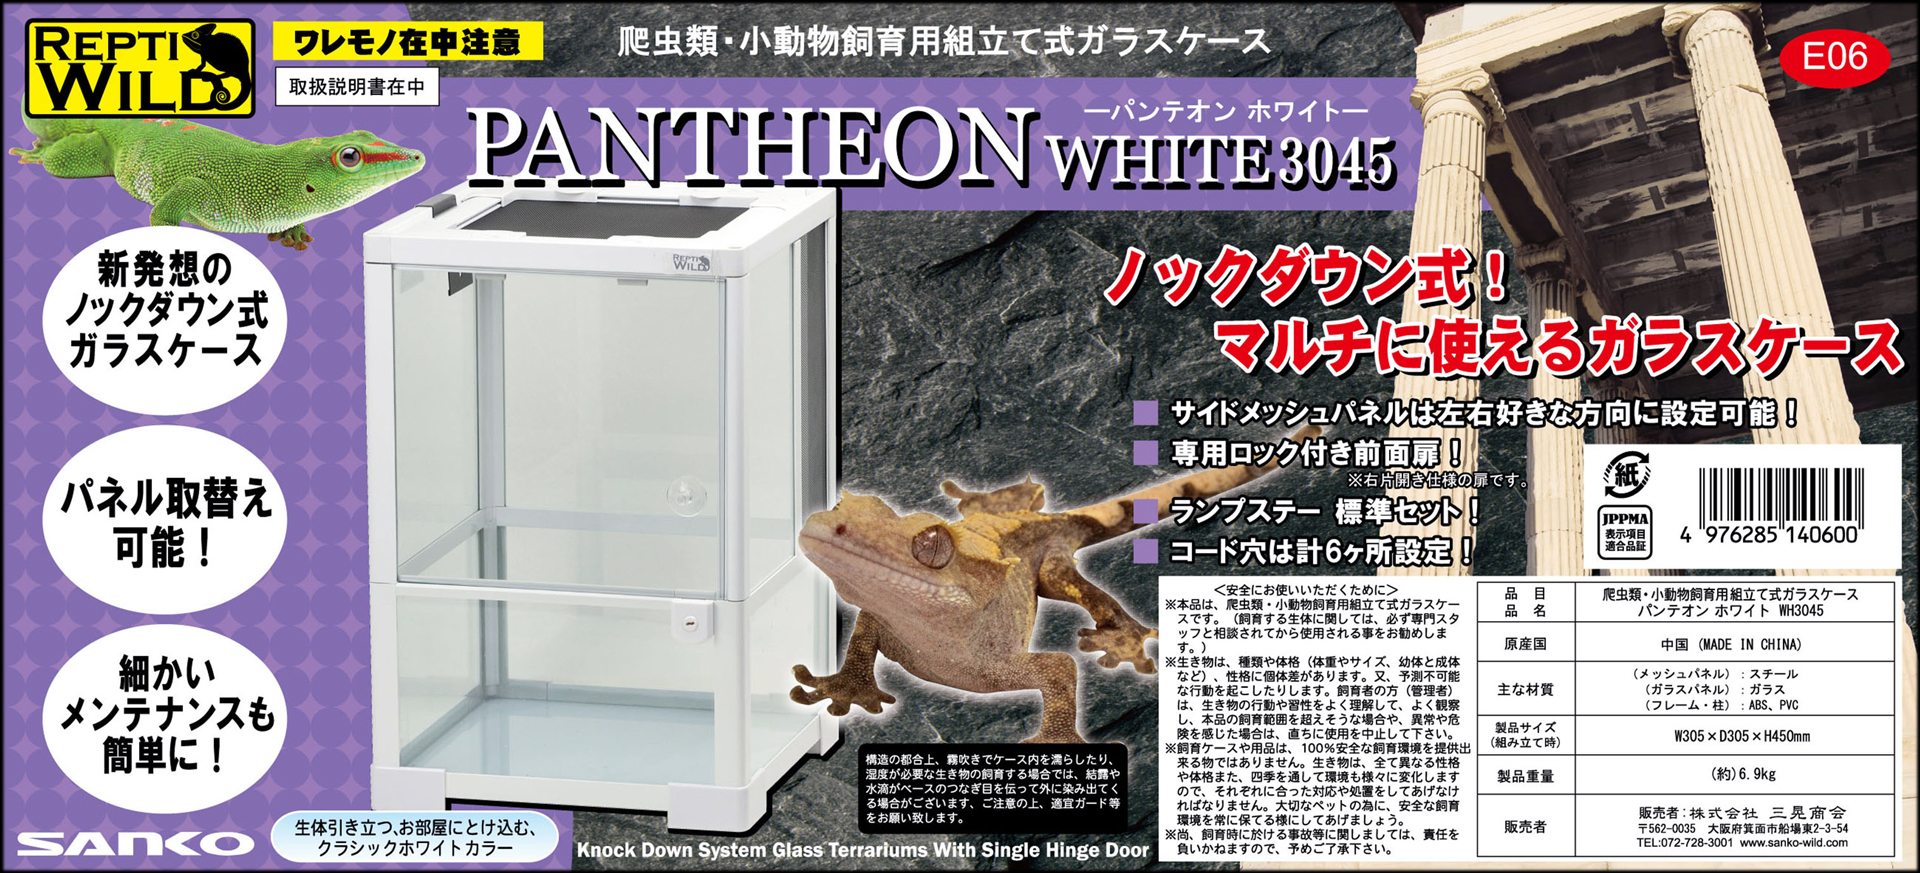 パンテオンホワイトWH3045 SANKO レプティワイルド 販売 通販 爬虫類用 